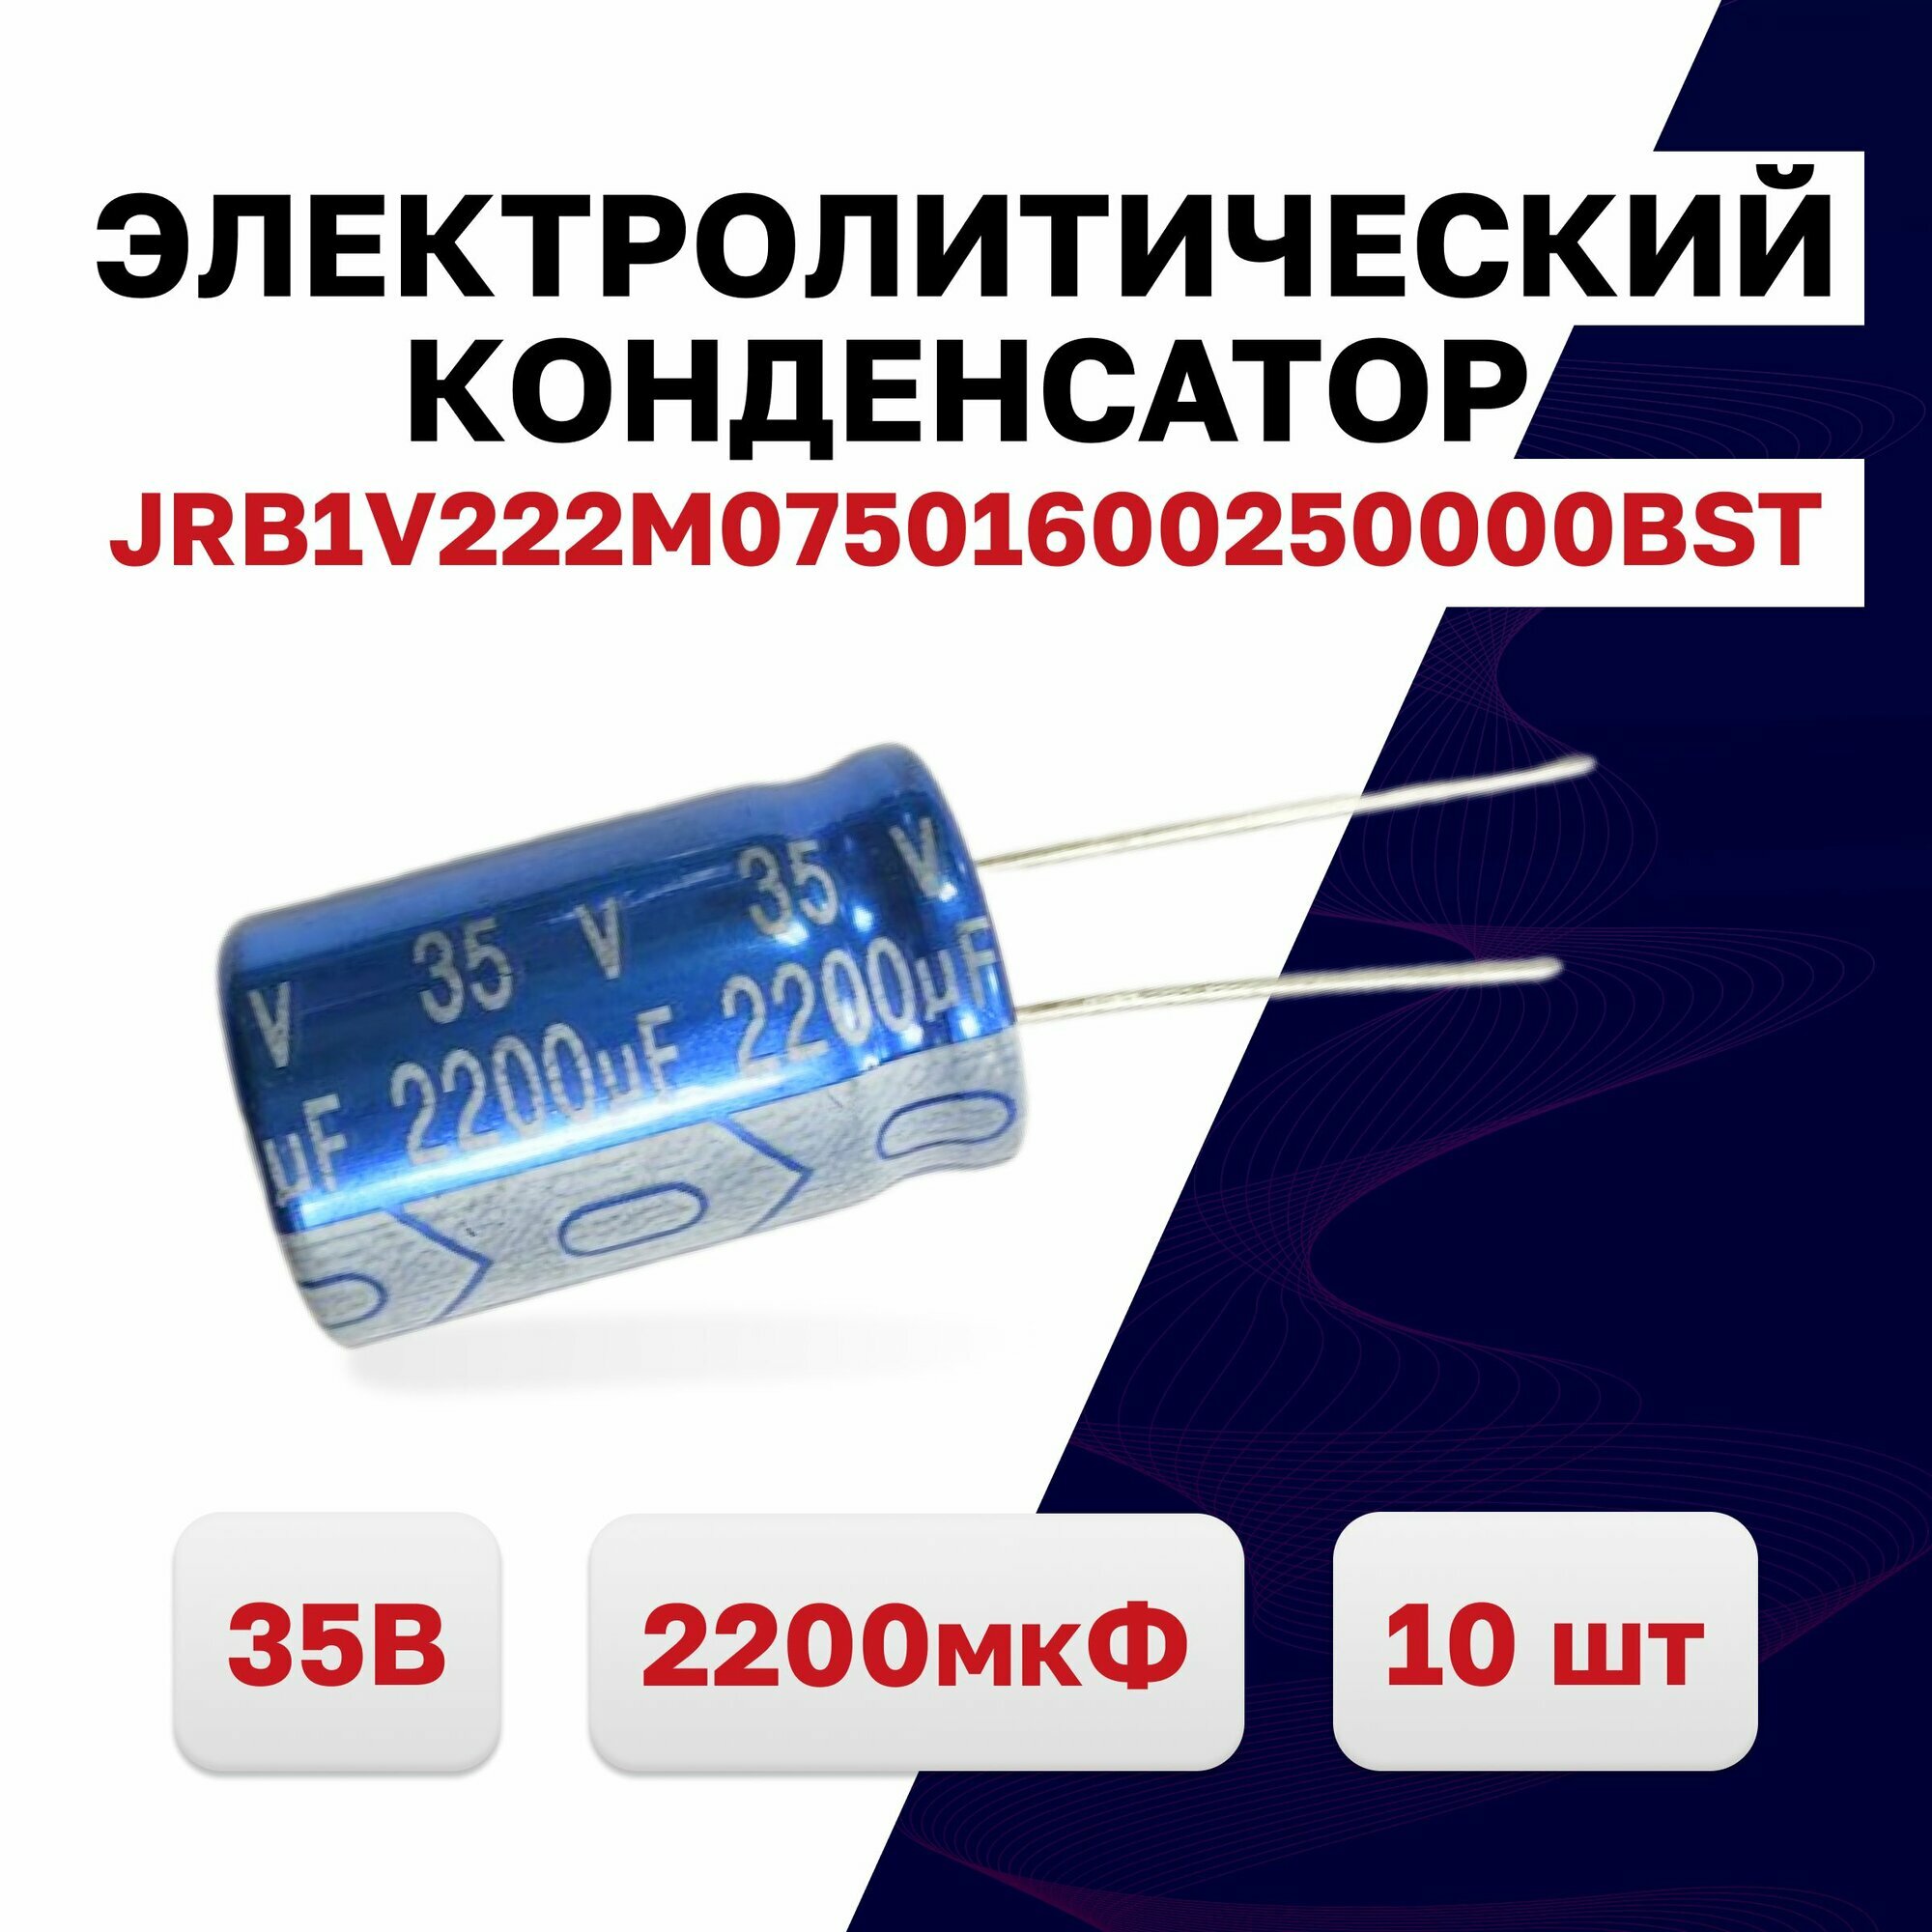 JRB1V222M07501600250000BST, конденсатор электролитический 35В 2200мкФ 105C, 10 шт.